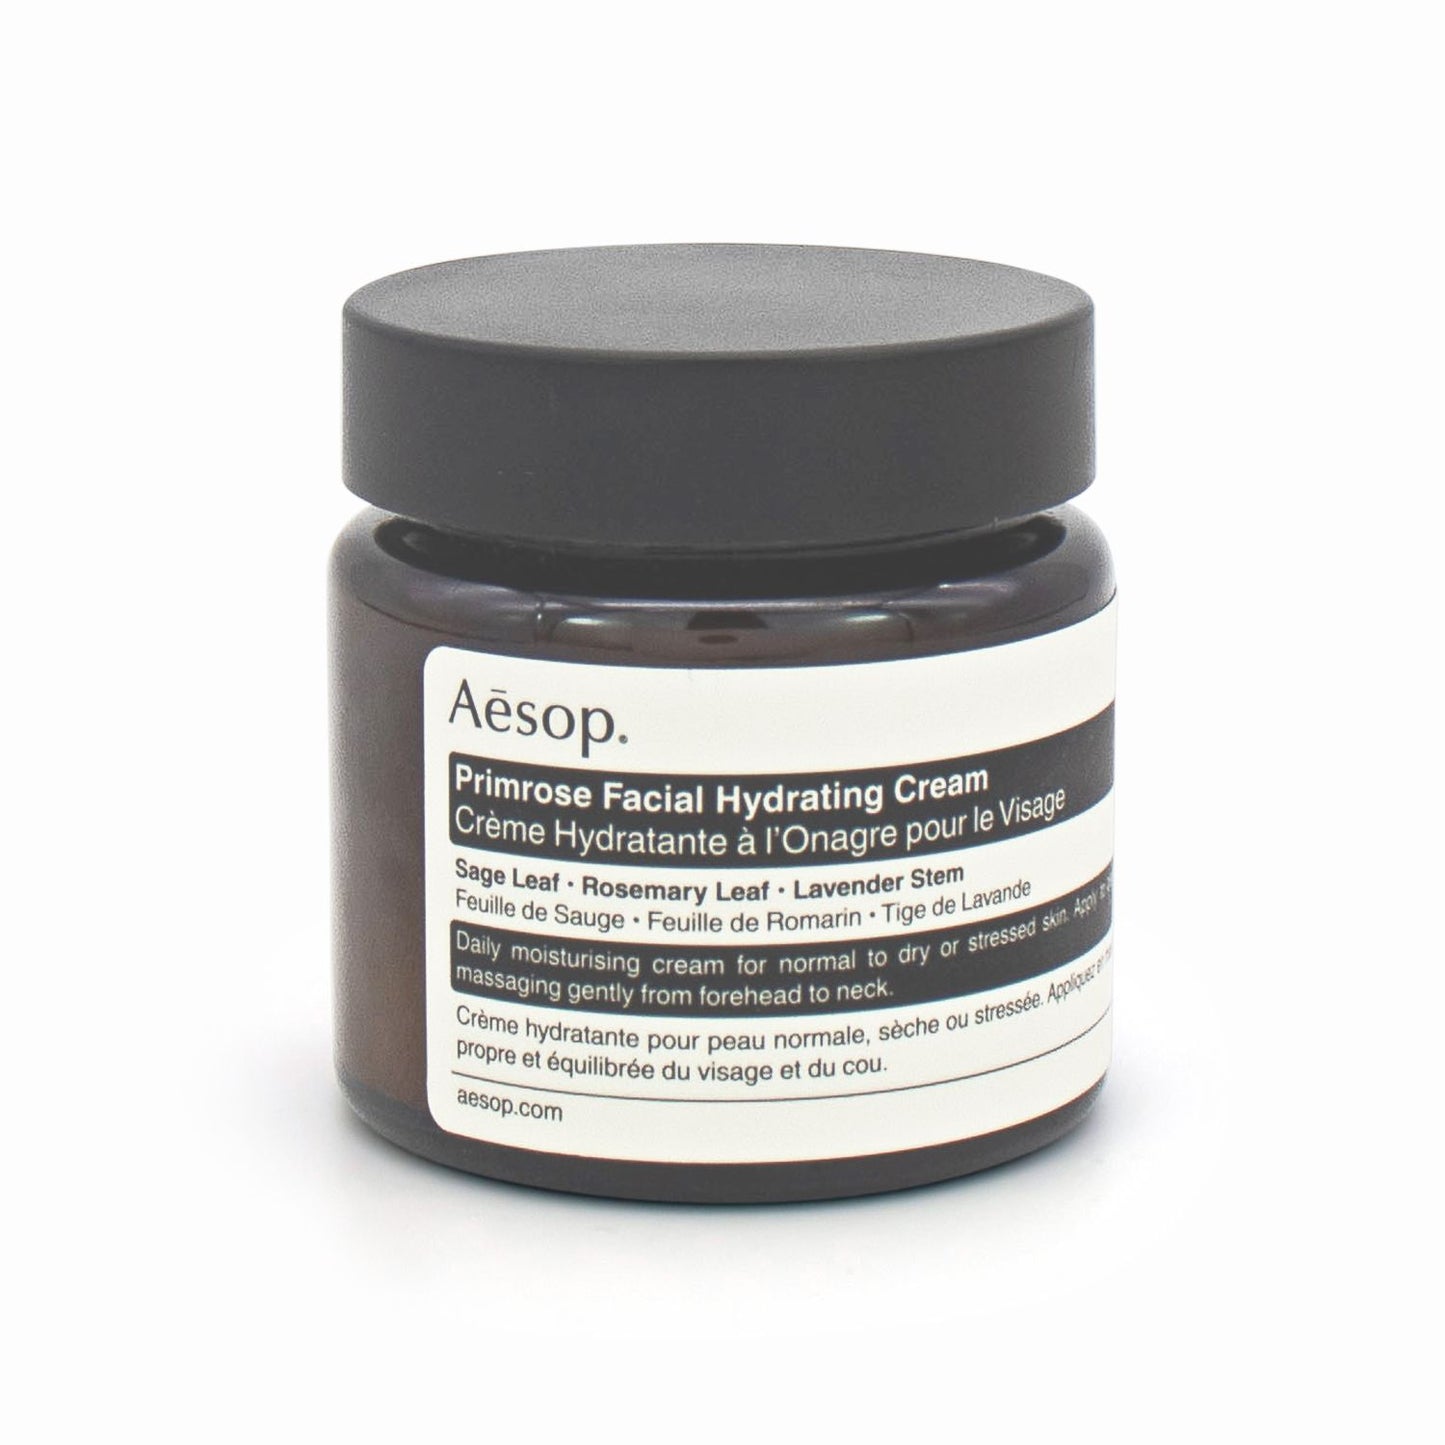 Aesop Primrose Facial Hydrating Cream 60ml - Imperfect Container